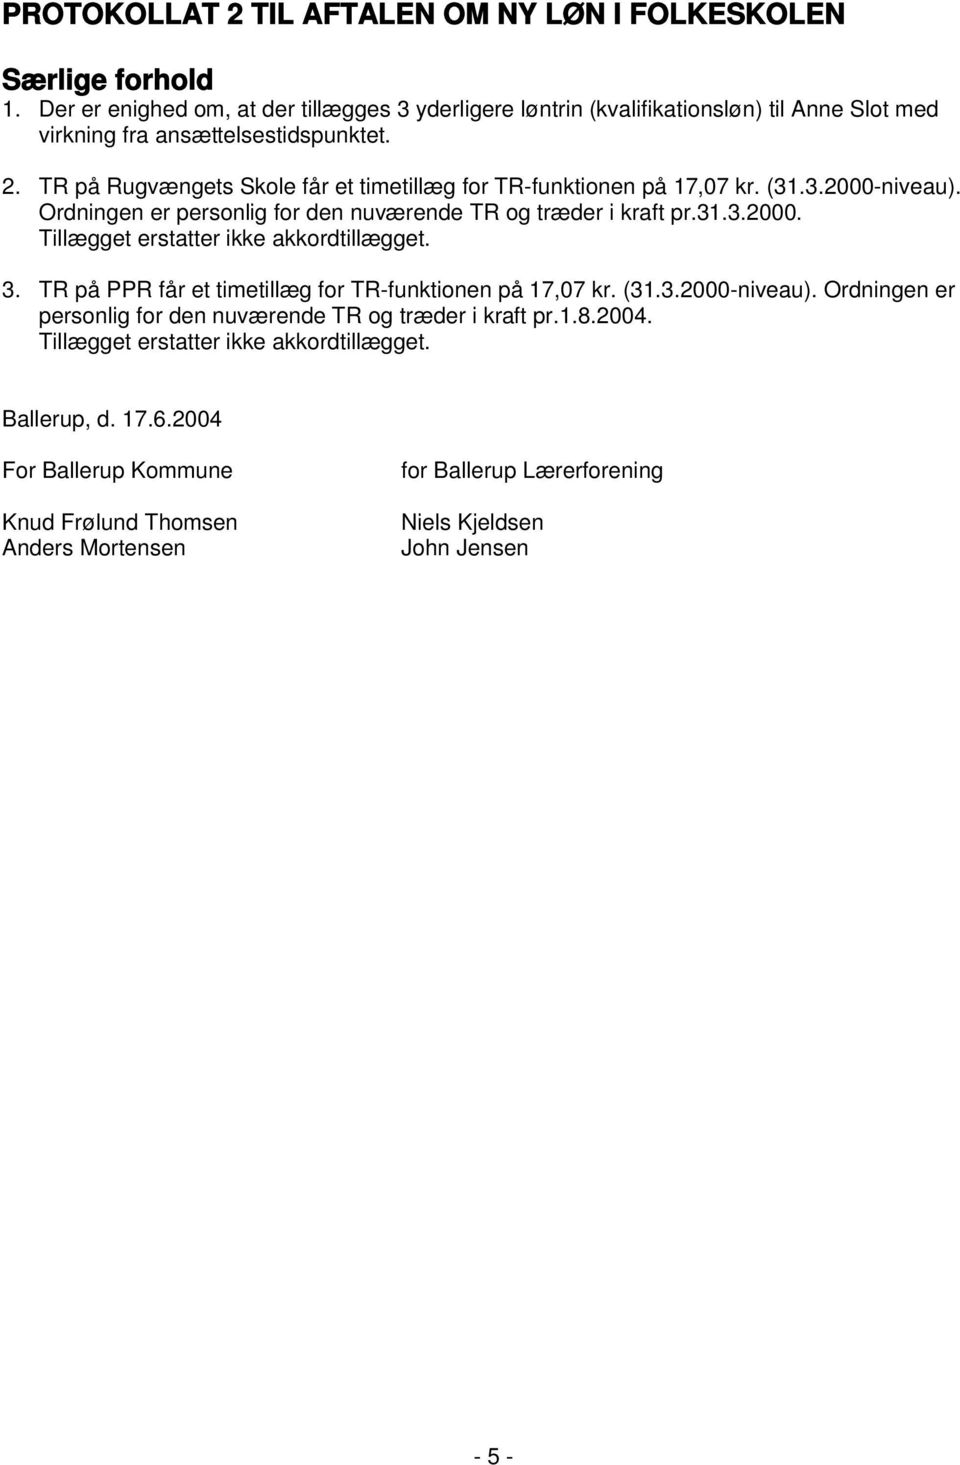 TR på Rugvængets Skole får et timetillæg for TR-funktionen på 17,07 kr. (31.3.2000-niveau). Ordningen er personlig for den nuværende TR og træder i kraft pr.31.3.2000. Tillægget erstatter ikke akkordtillægget.